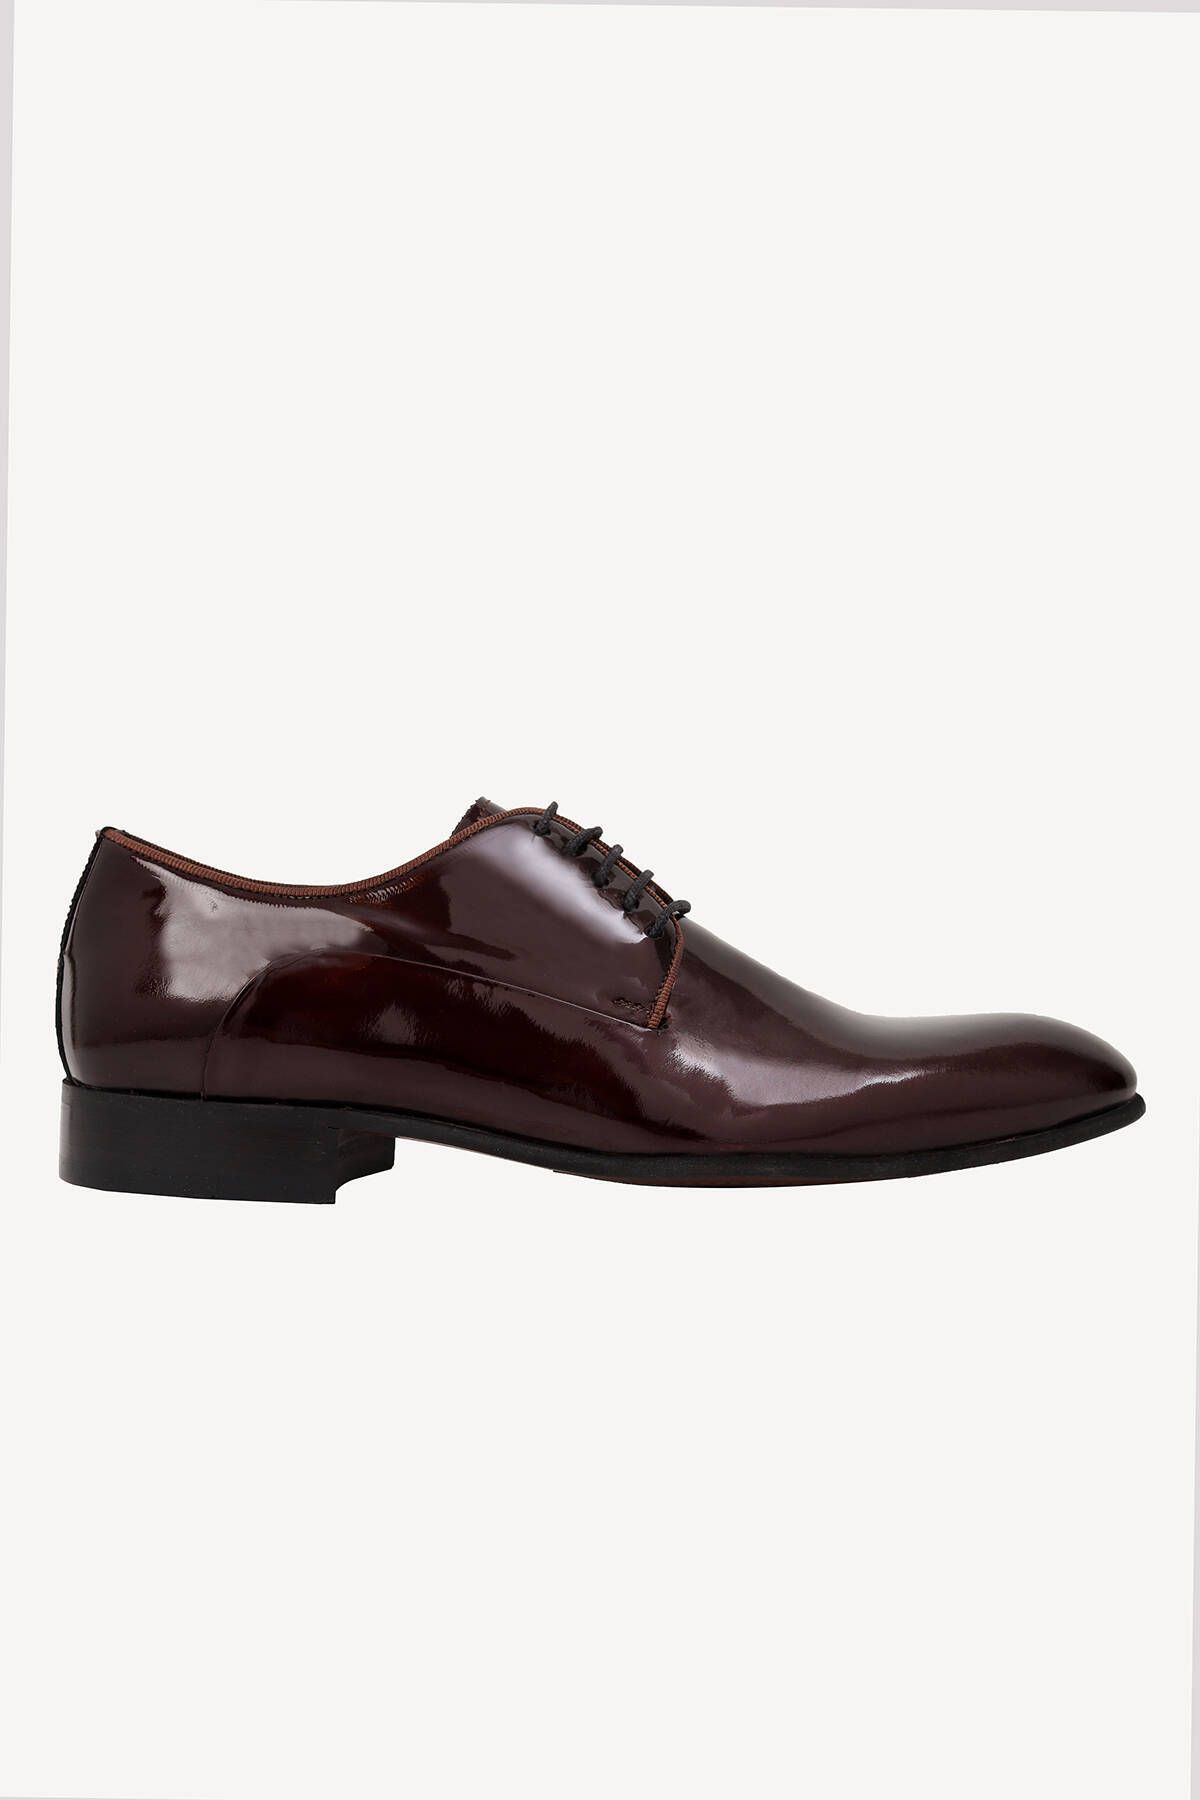 YSF Erkek Lacivert Bordo Bağcıklı Klasik Rugan Ayakkabı